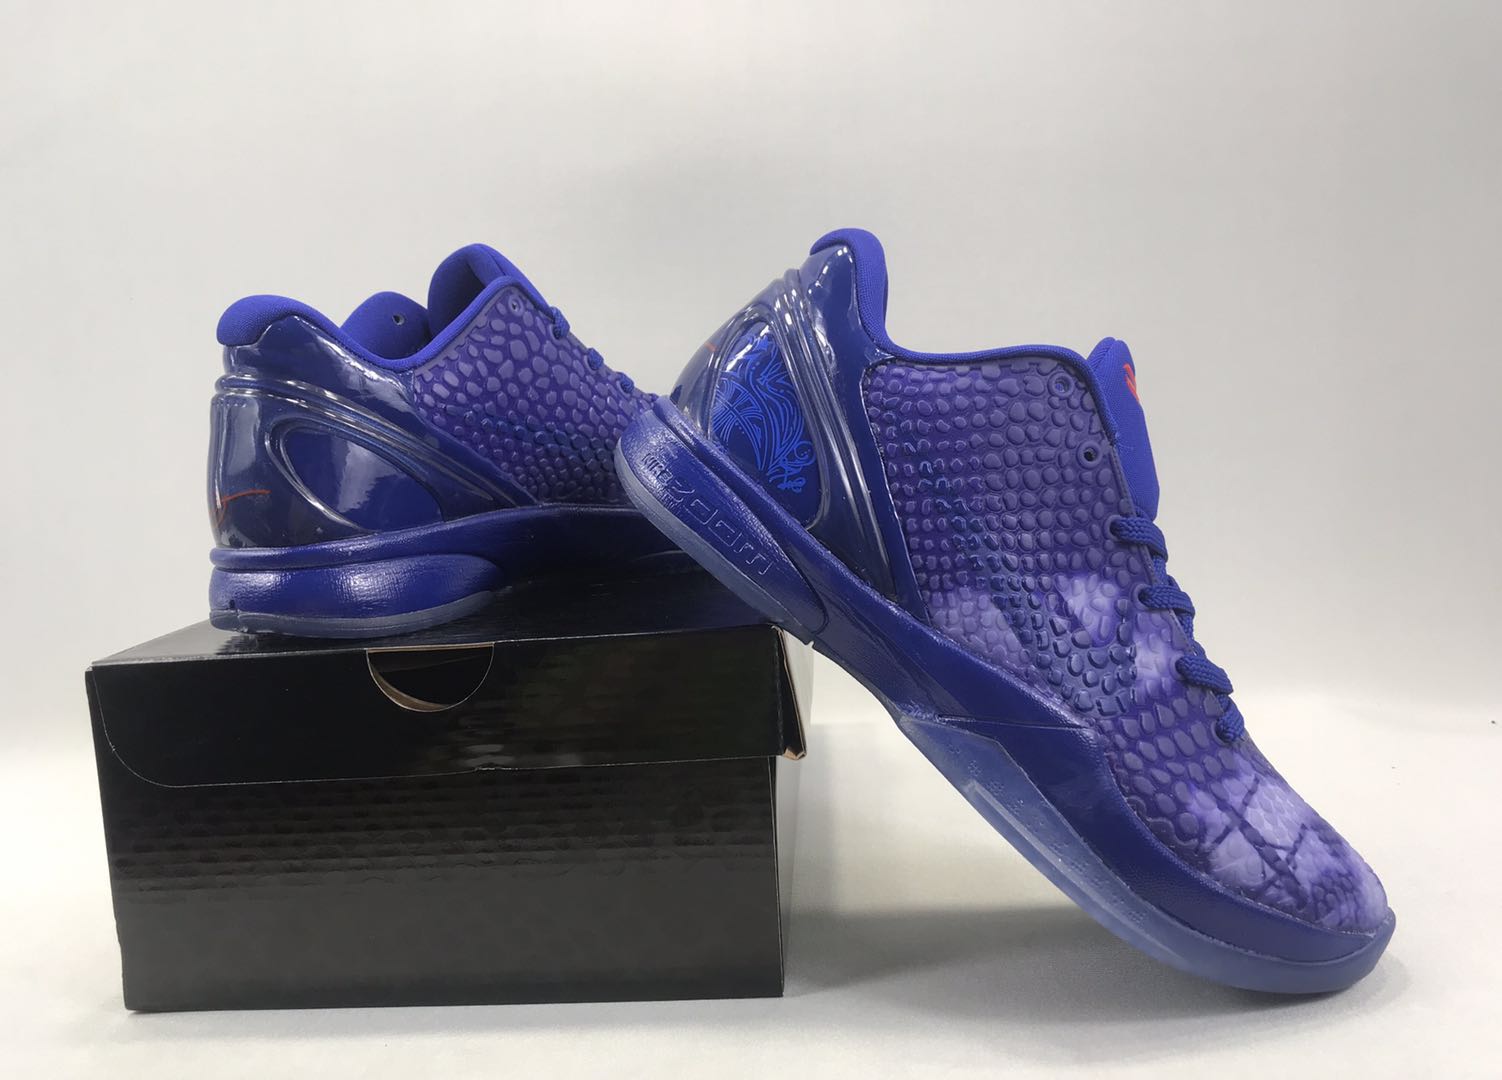 New Nike Kobe Bryant VIII Purple Shoes